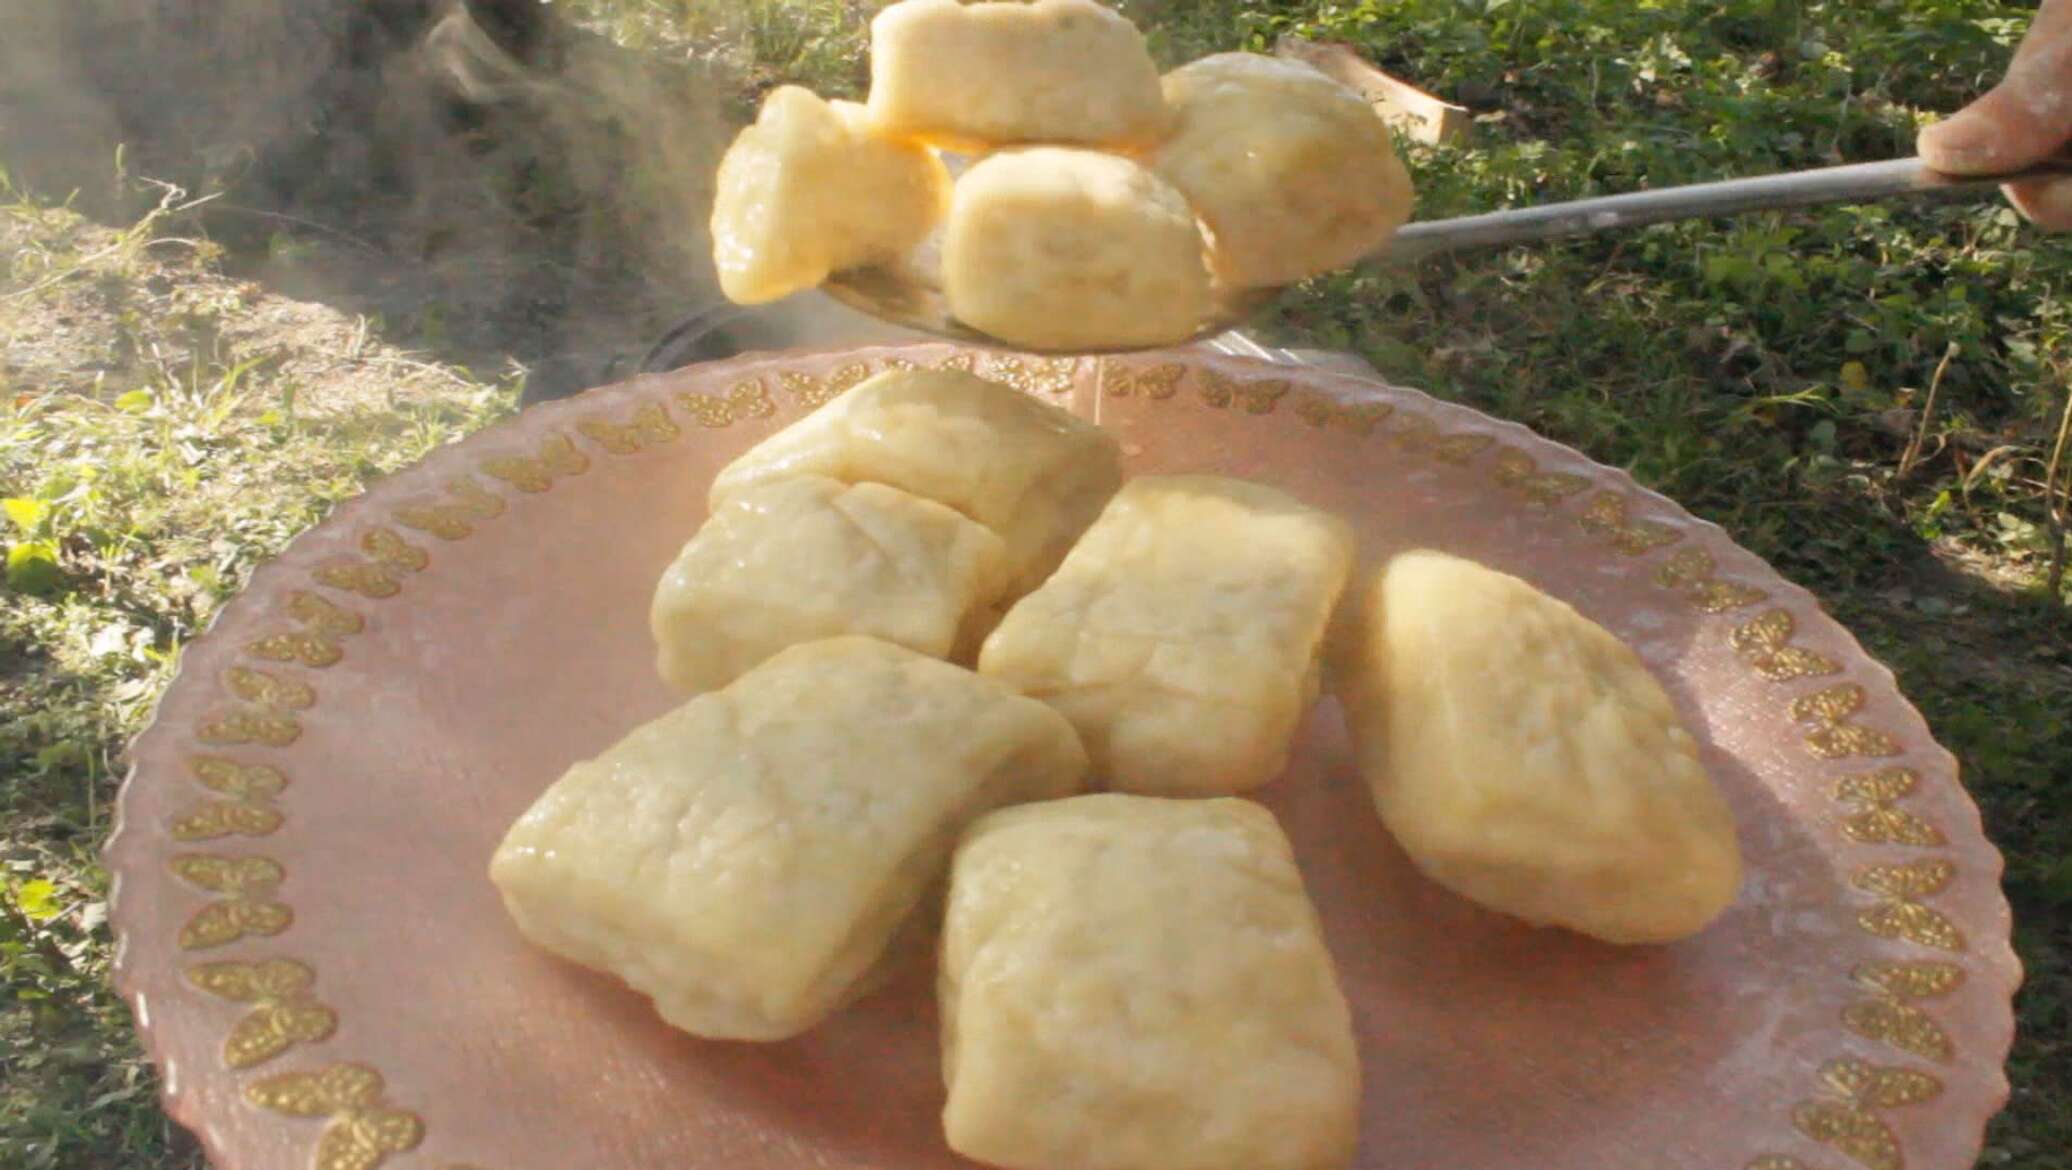 Аварский хинкал на кефире рецепт приготовления пошаговый с фото